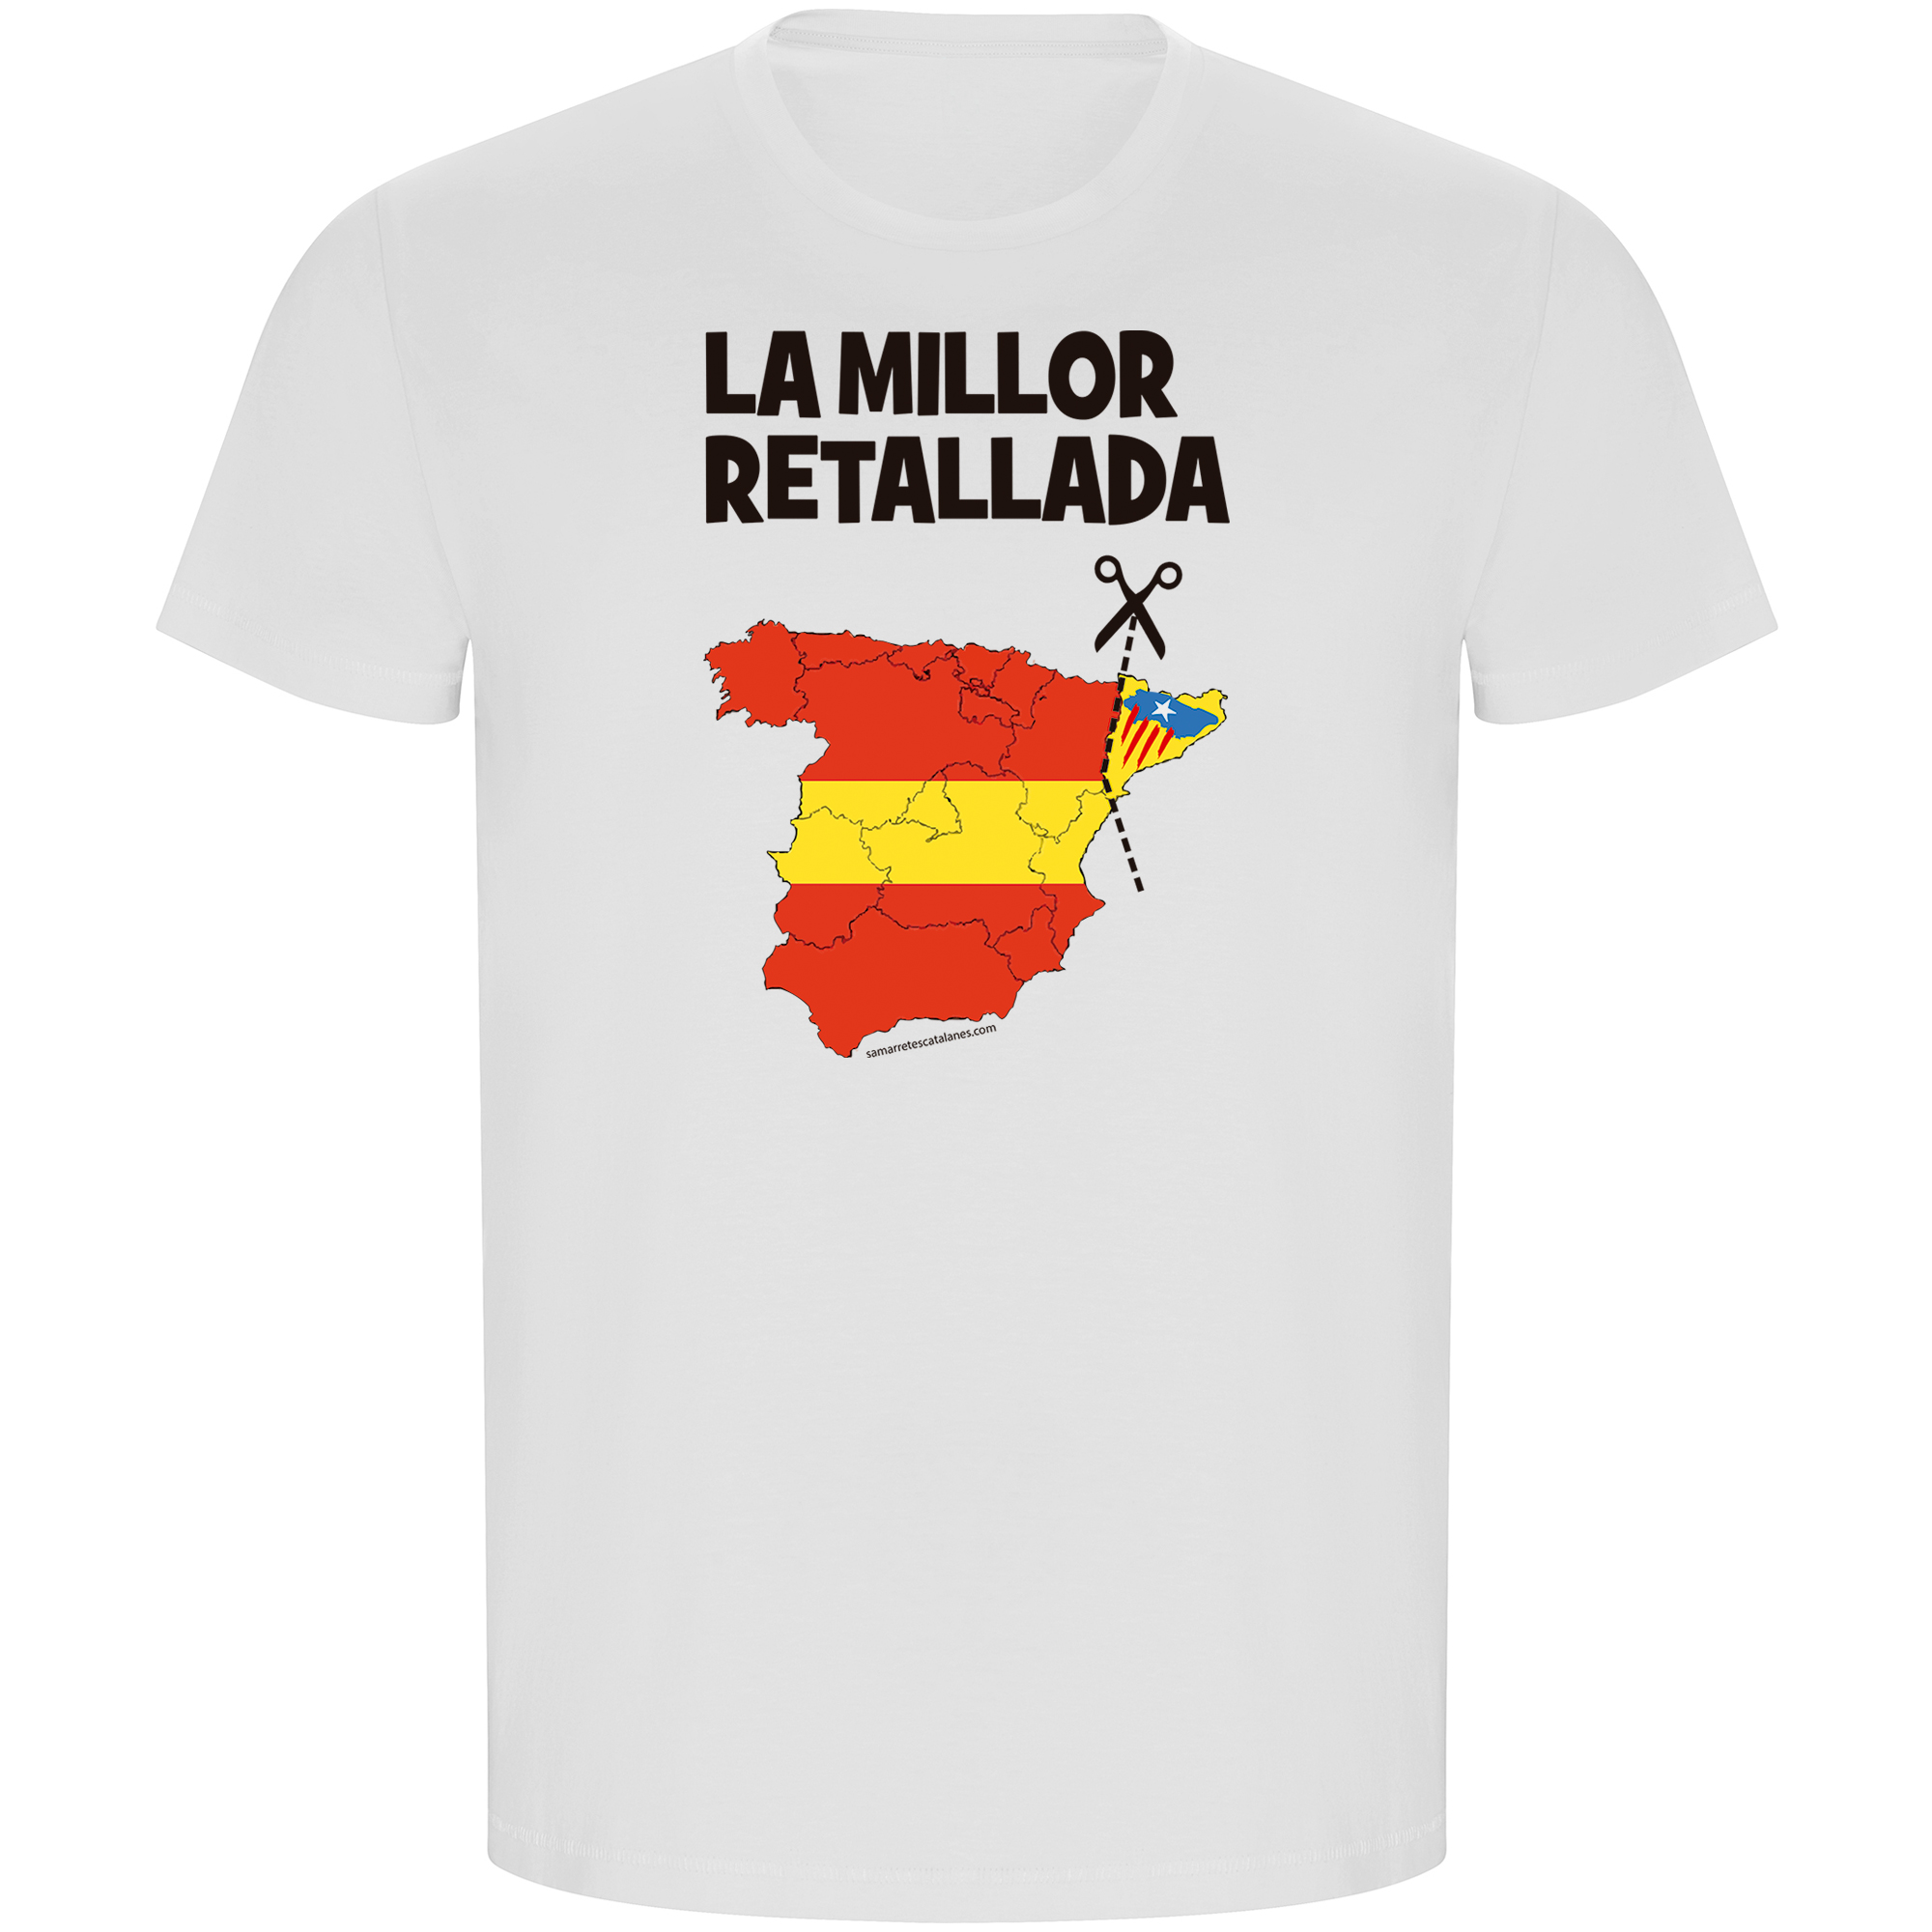 T Shirt ECO Catalogna La Millor Retallada Manica Corta Uomo